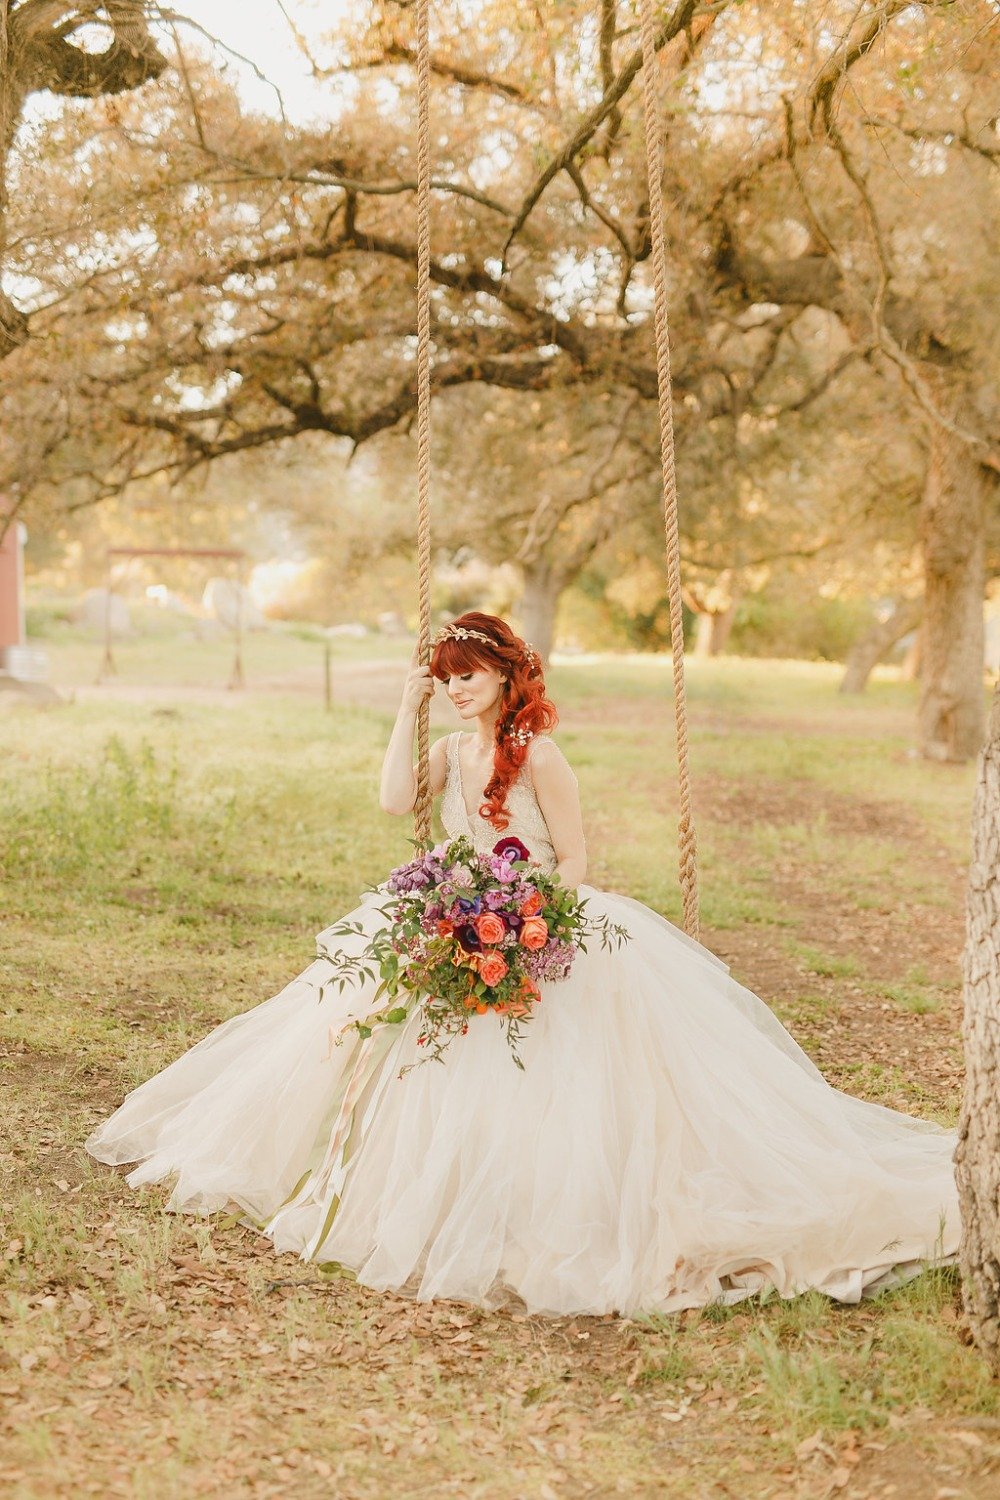 Floral Fairytale Shoot at Heavenly Oaks Flower Farm Bride on Swing